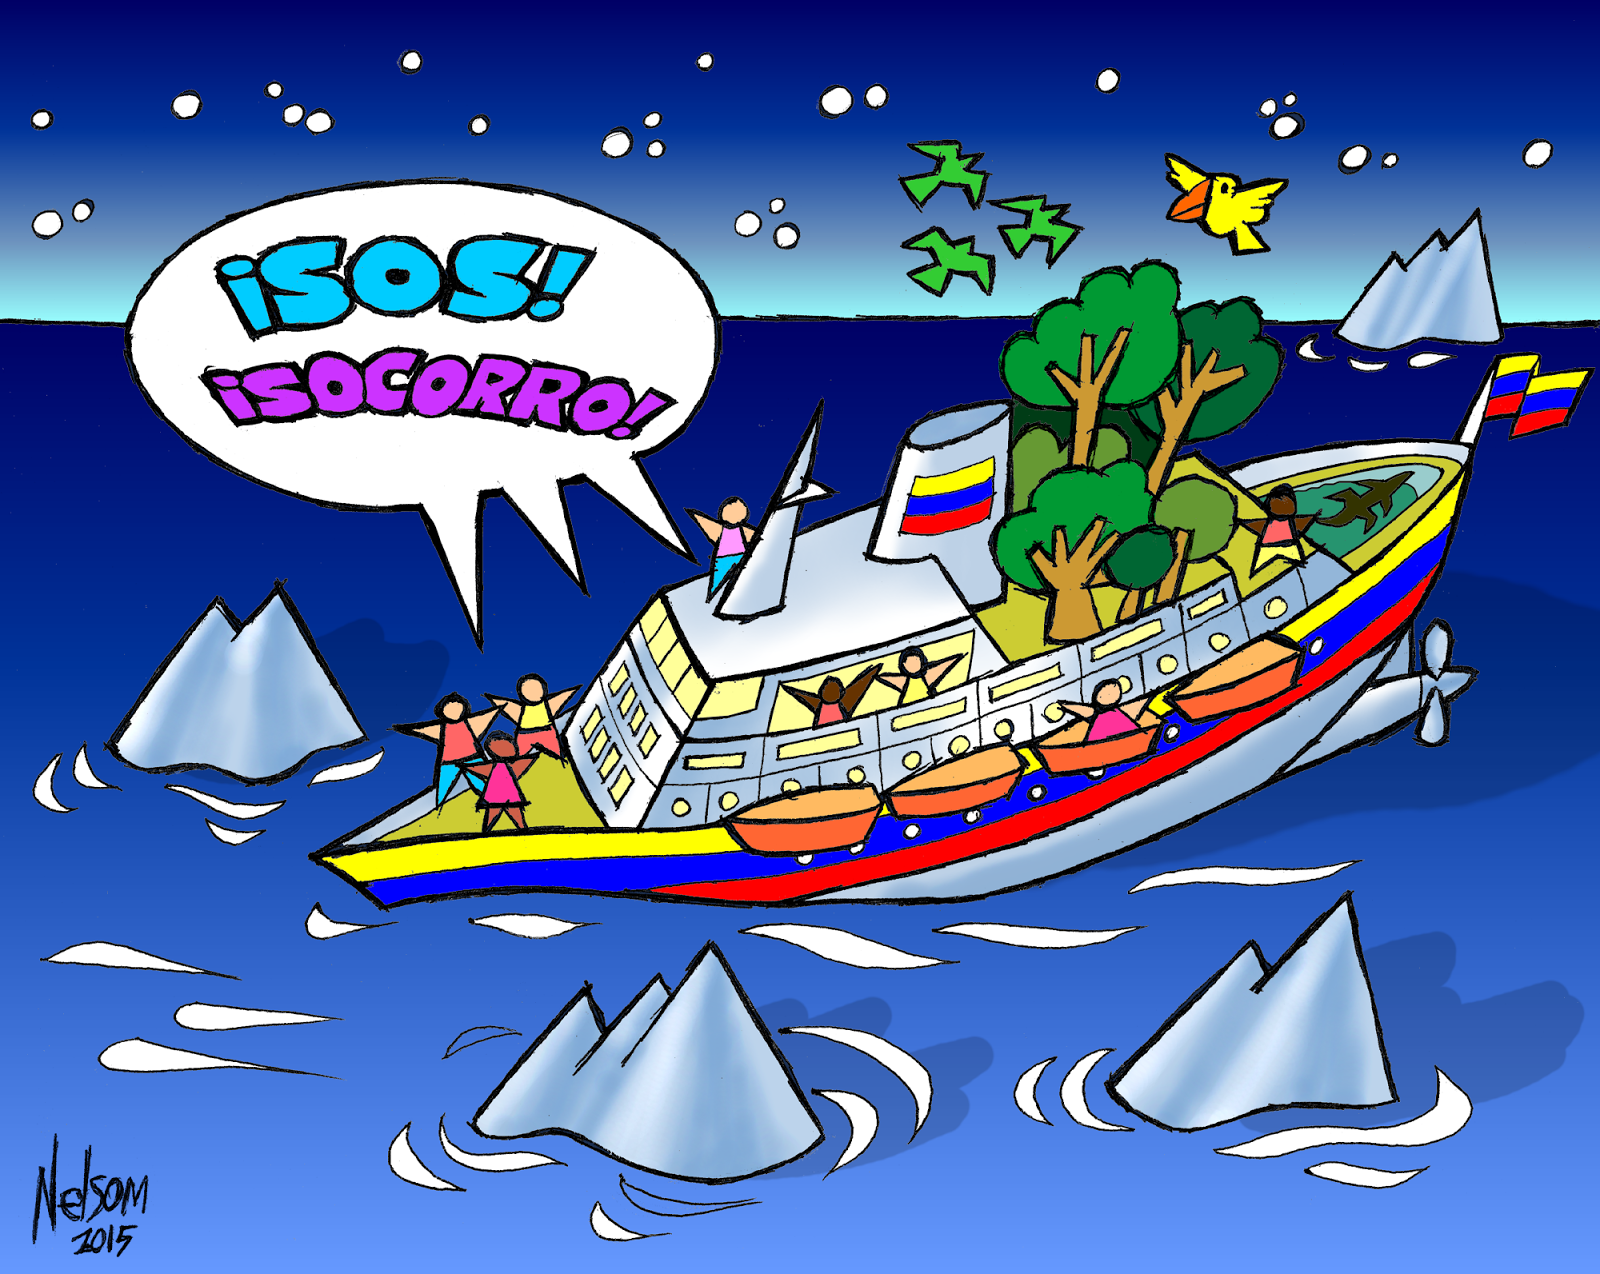 Palabras al viento: Nuestro barco tricolor